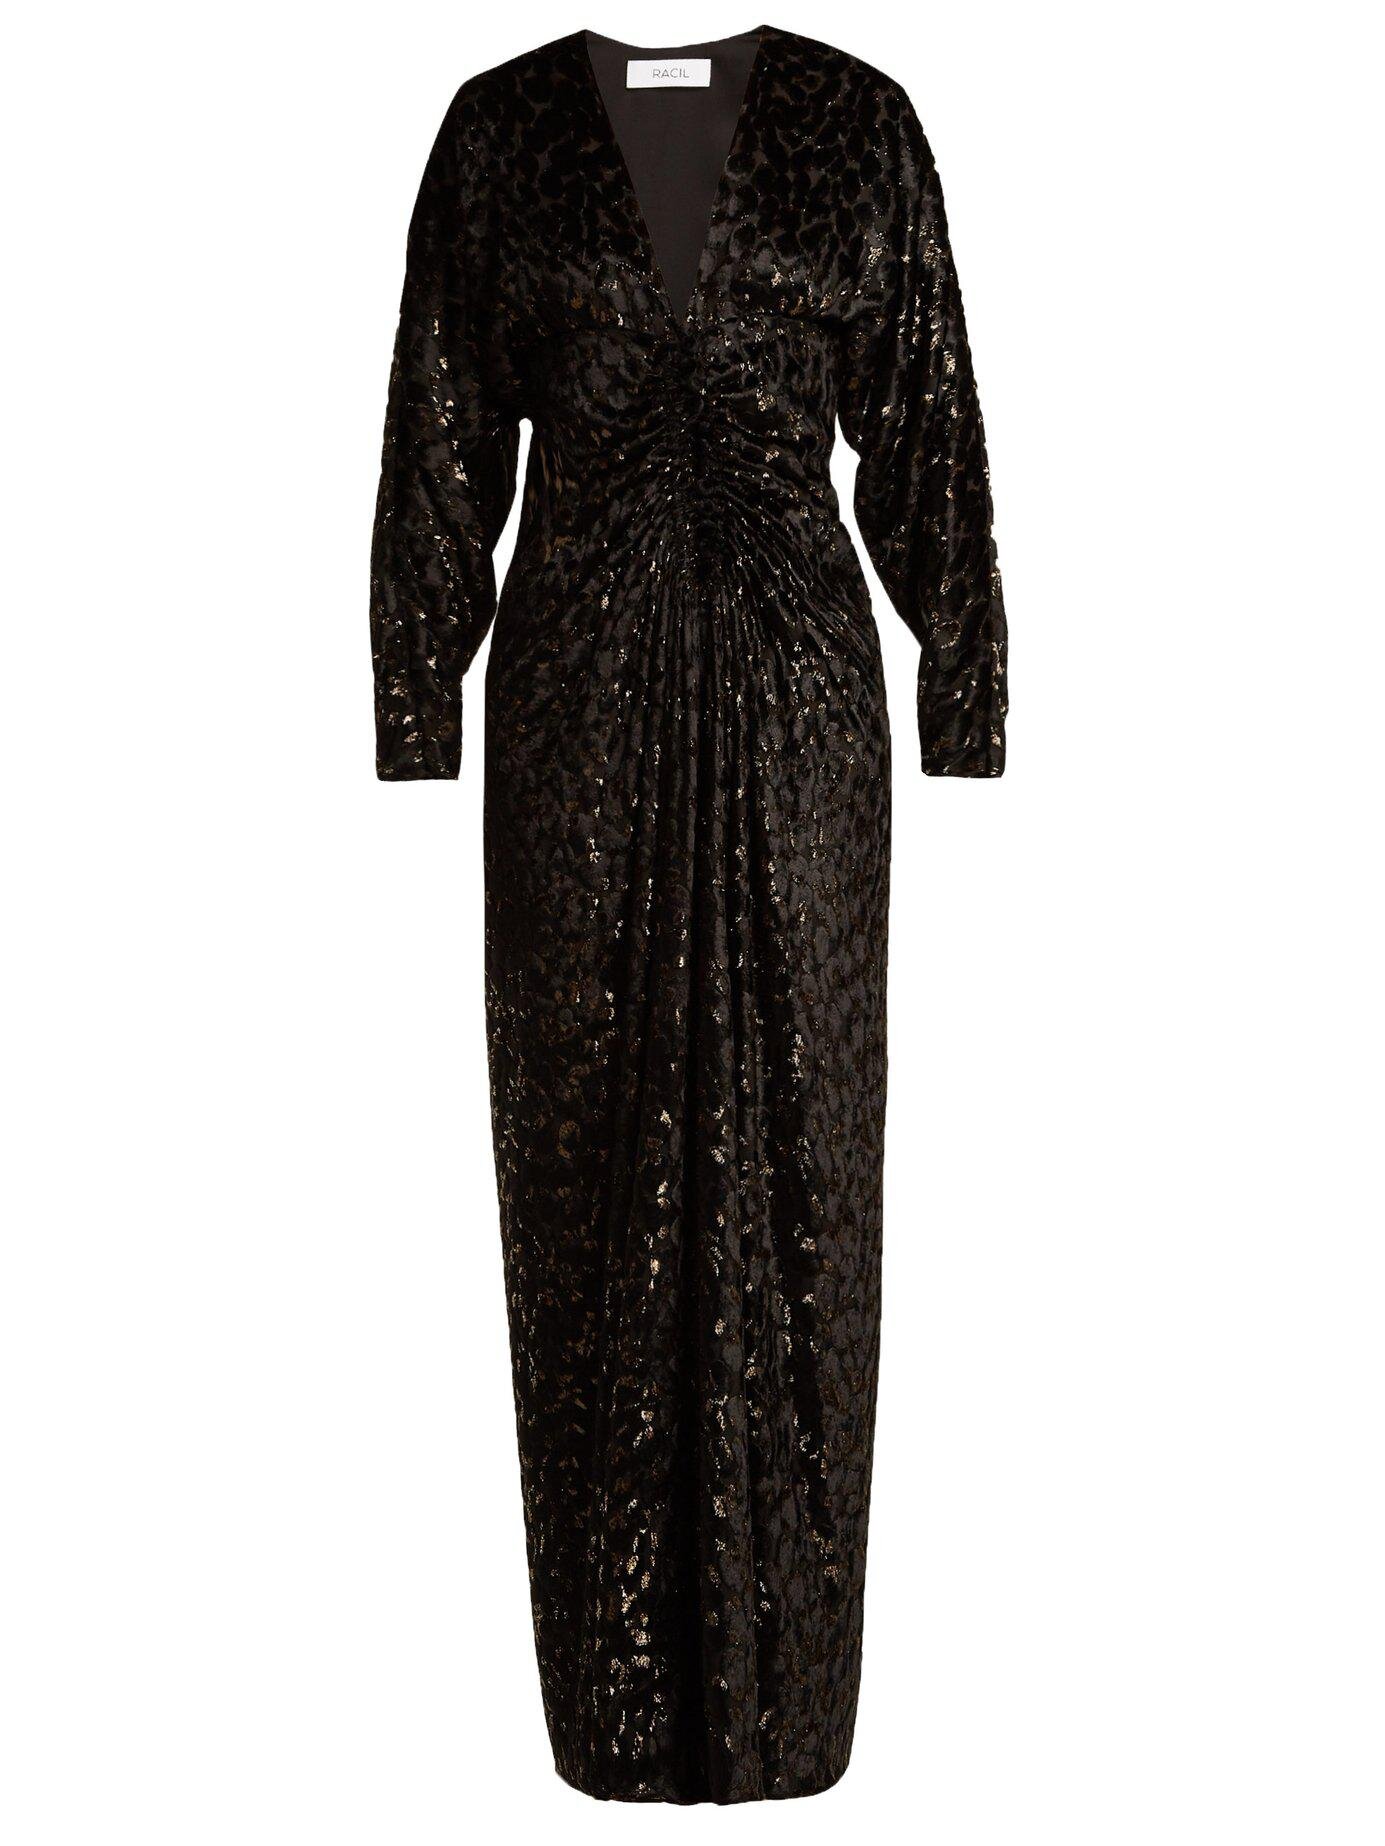 Racil Rita Gown in Black Velvet-Devoré — UFO No More